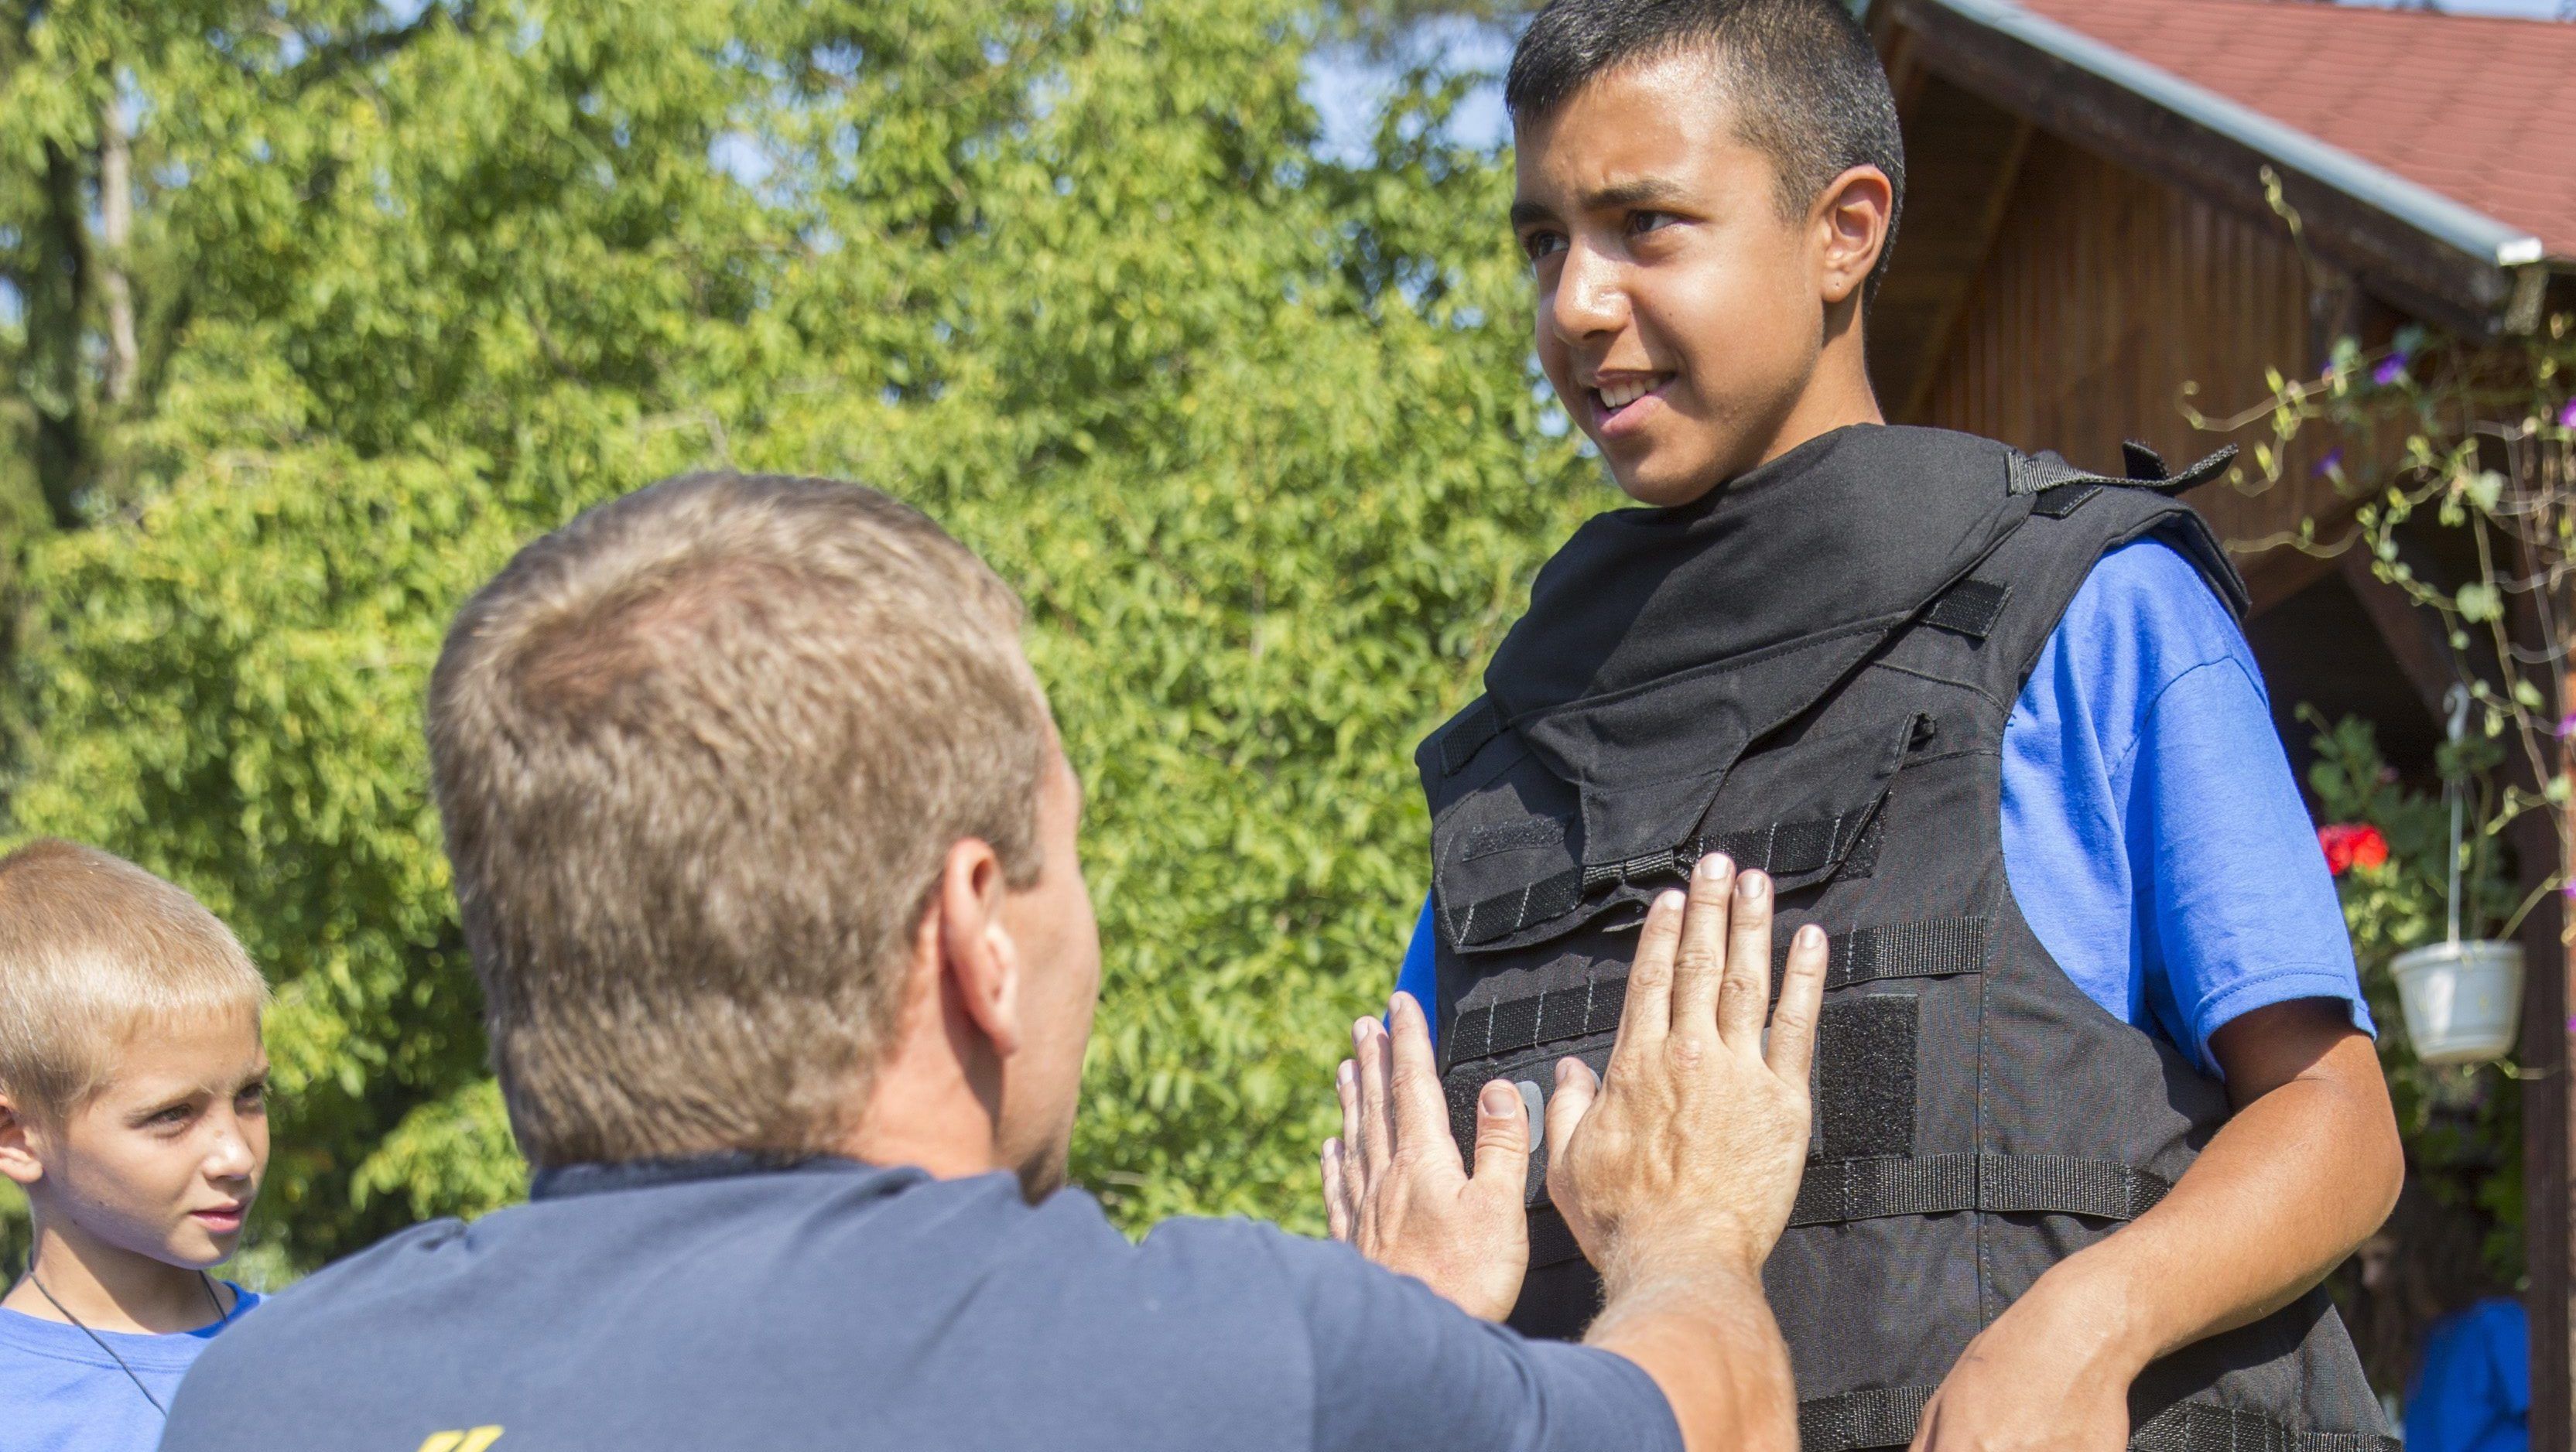 Támogatást kaphatnak a rendőrségtől a roma diákok, ha jól tanulnak és rendészeti pályára mennek